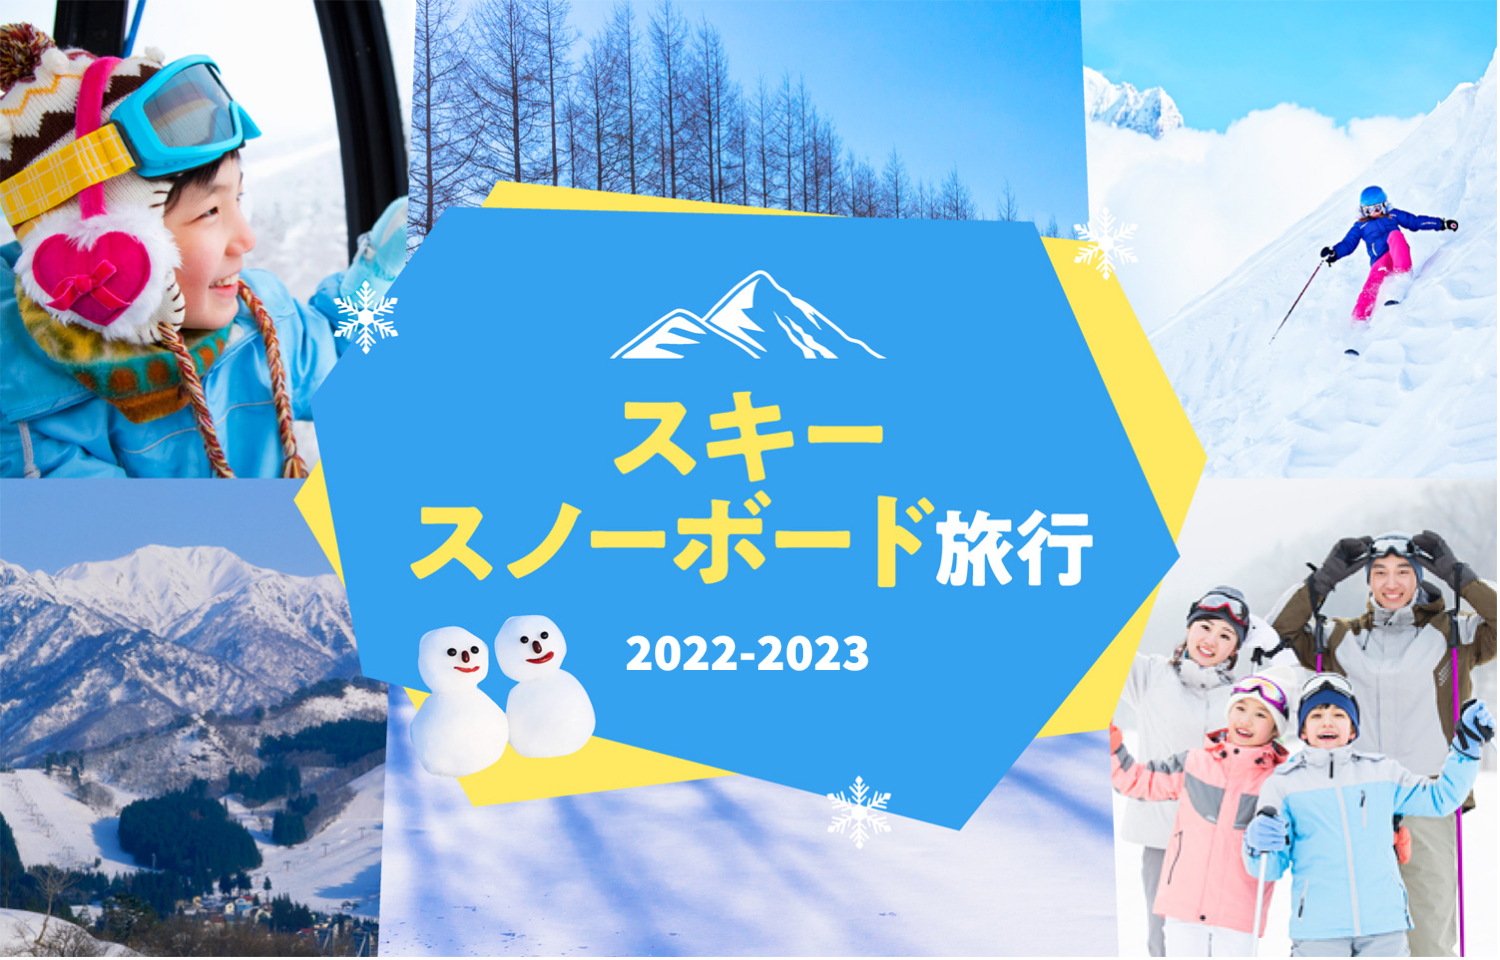 スキー・スノーボード旅行2022-2023